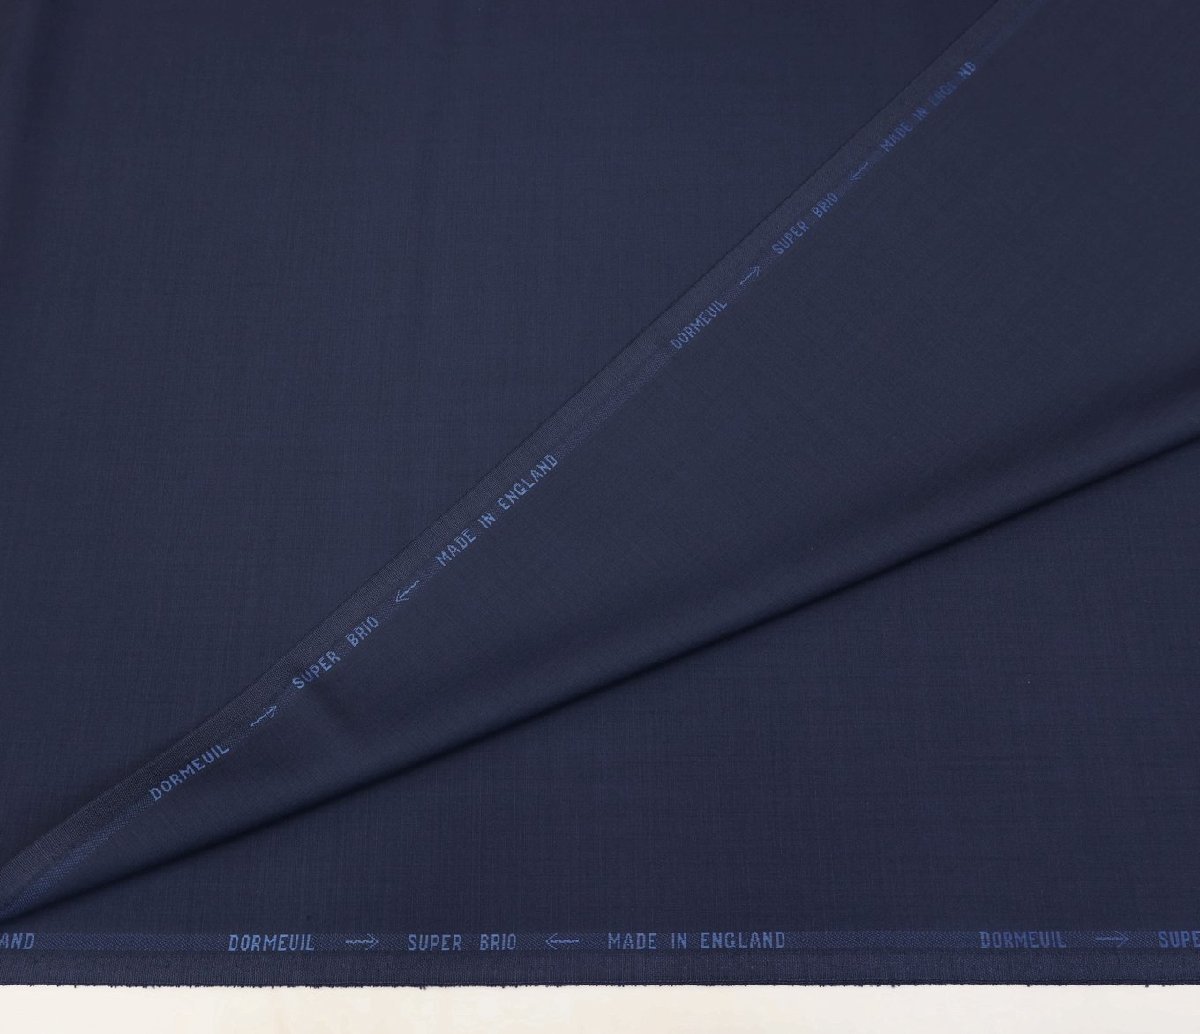 ●ドーメル社代表作「スーパーブリオ」定番の紺無地・超高級60%skモヘア・美しい光沢です。XSスーツまたはジャケット・長さ2.6/2.4m_画像4